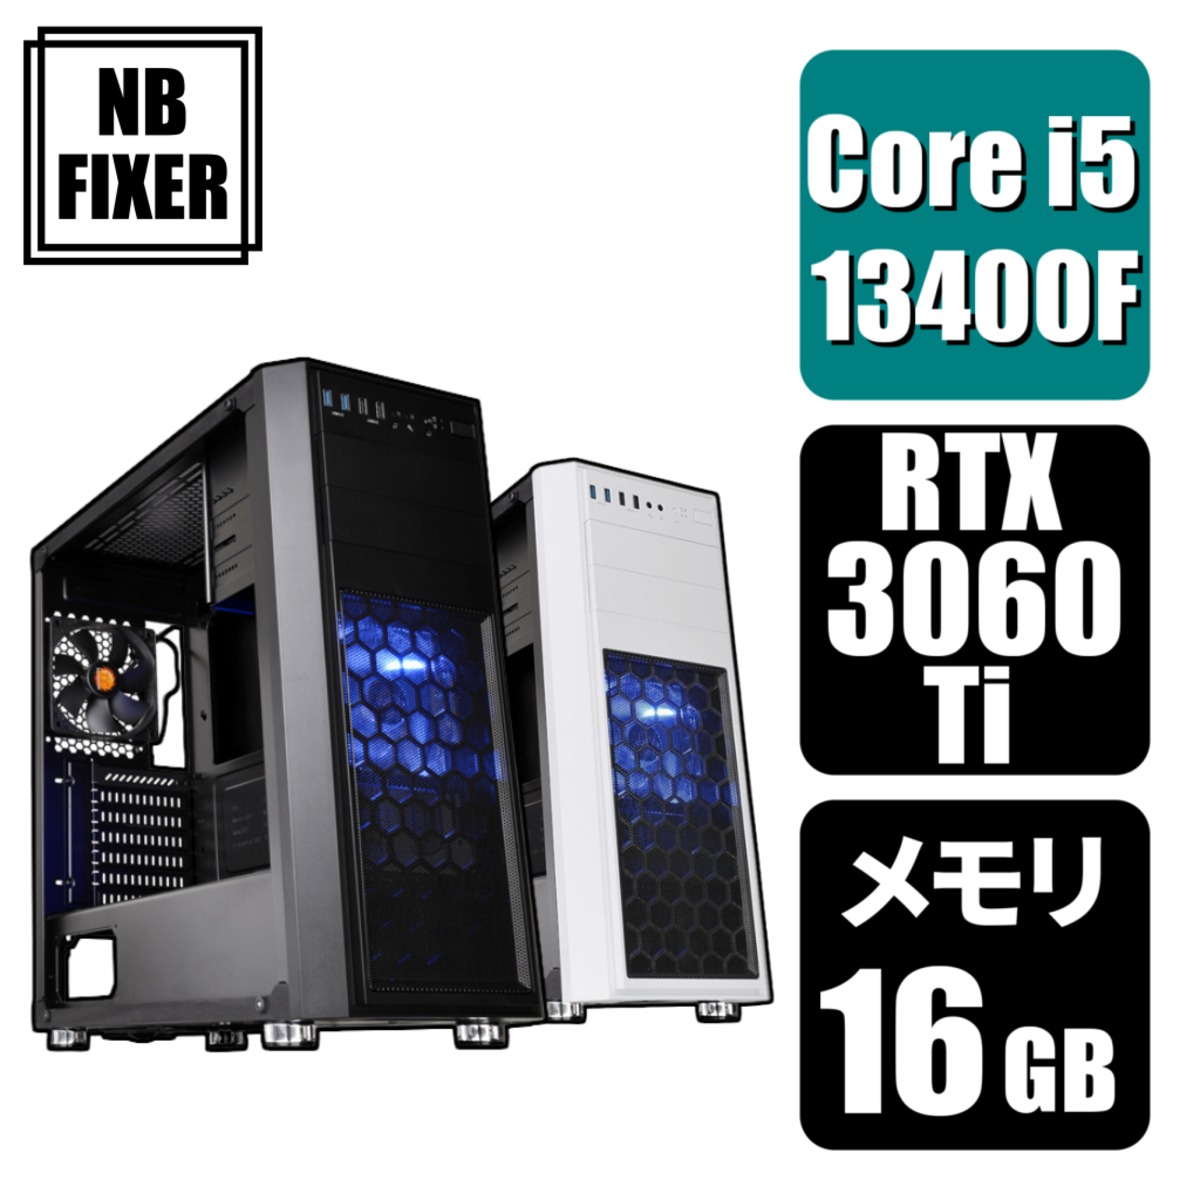 【ゲーミングPC】 Core i5 13400F / RTX3060Ti / メモリ16GB / SSD 1TB | NB FIXER  公式オンラインショップ powered by BASE